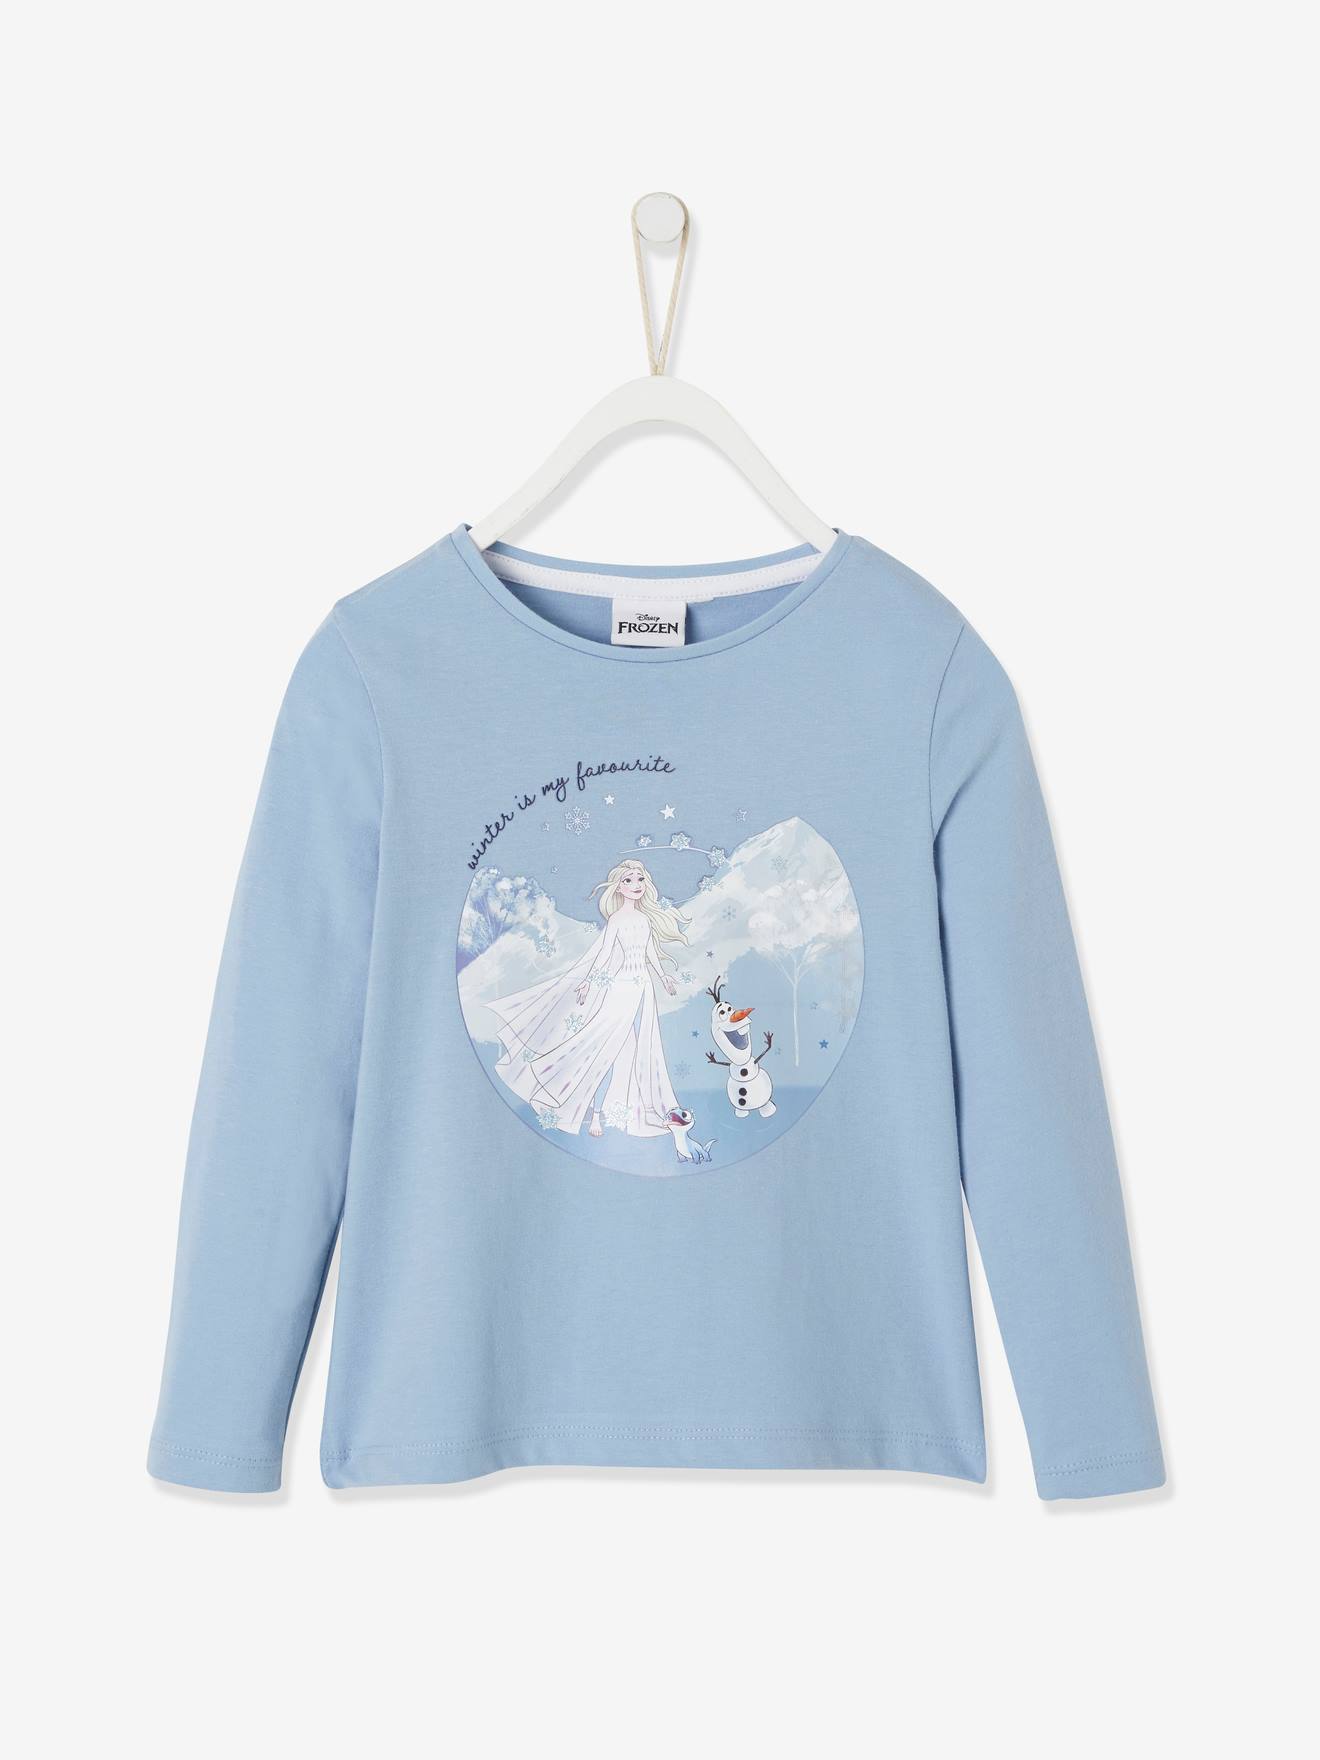 REINE DES NEIGES Camisola de mangas compridas Frozen da Disney®, para criança azul medio liso com motivo